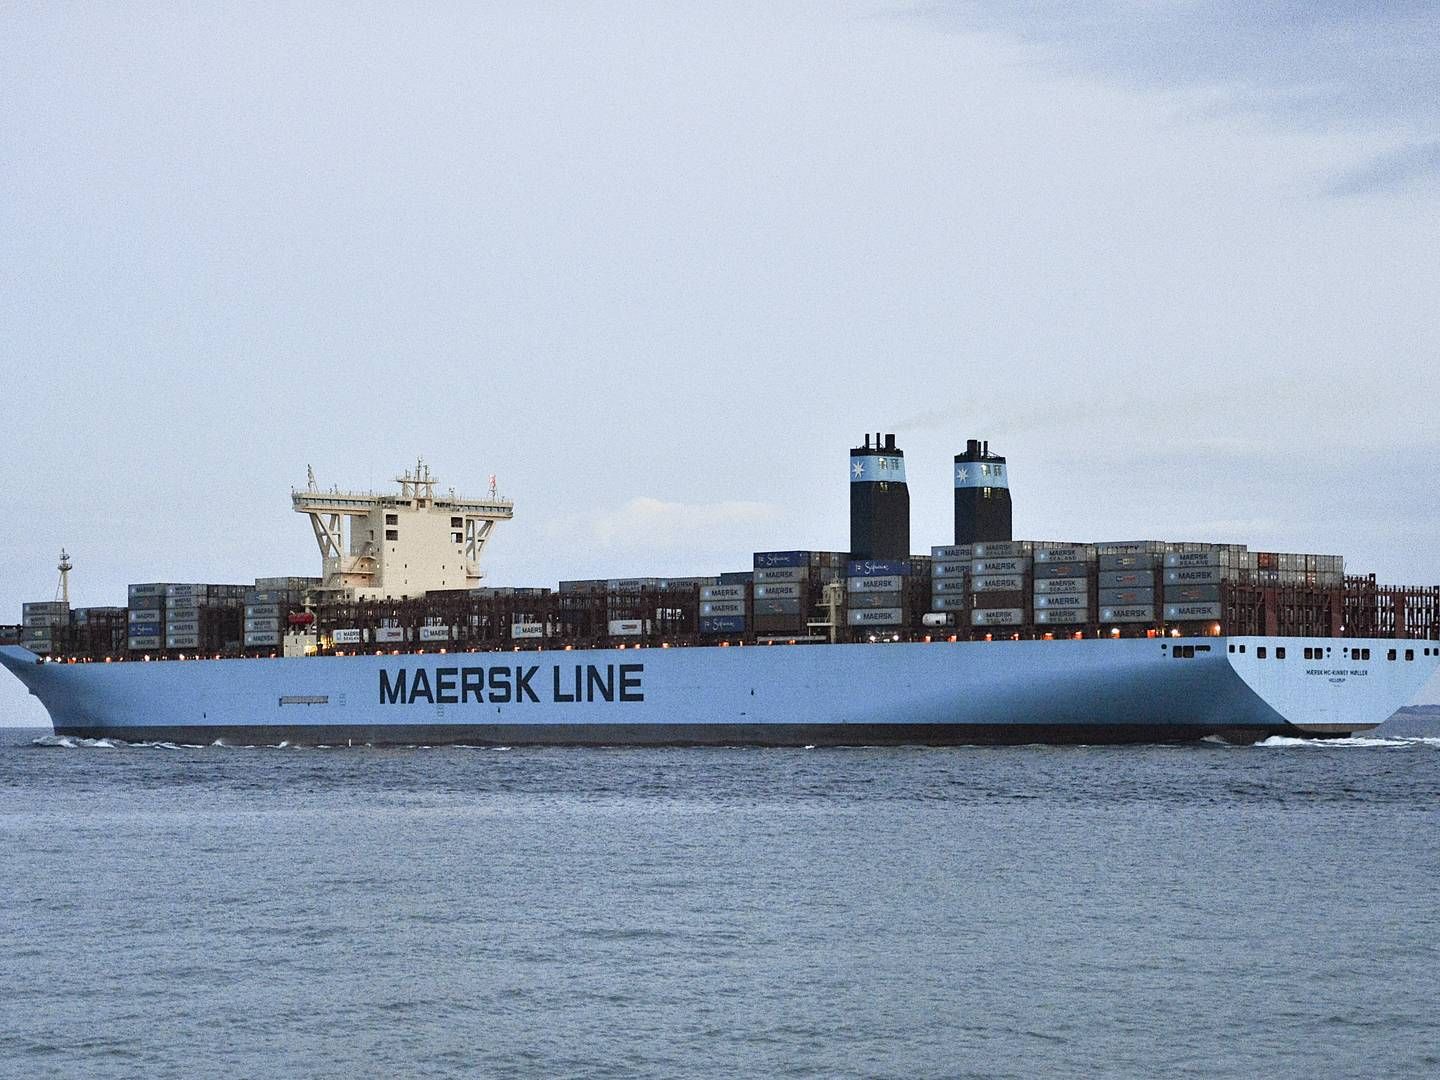 Ud af et driftsresultat på 8,8 mia. dollar i andet kvartal i år har Maersk betalt 164 mio. i skat - det svarer til 1,8 pct. | Foto: Ernst van Norde